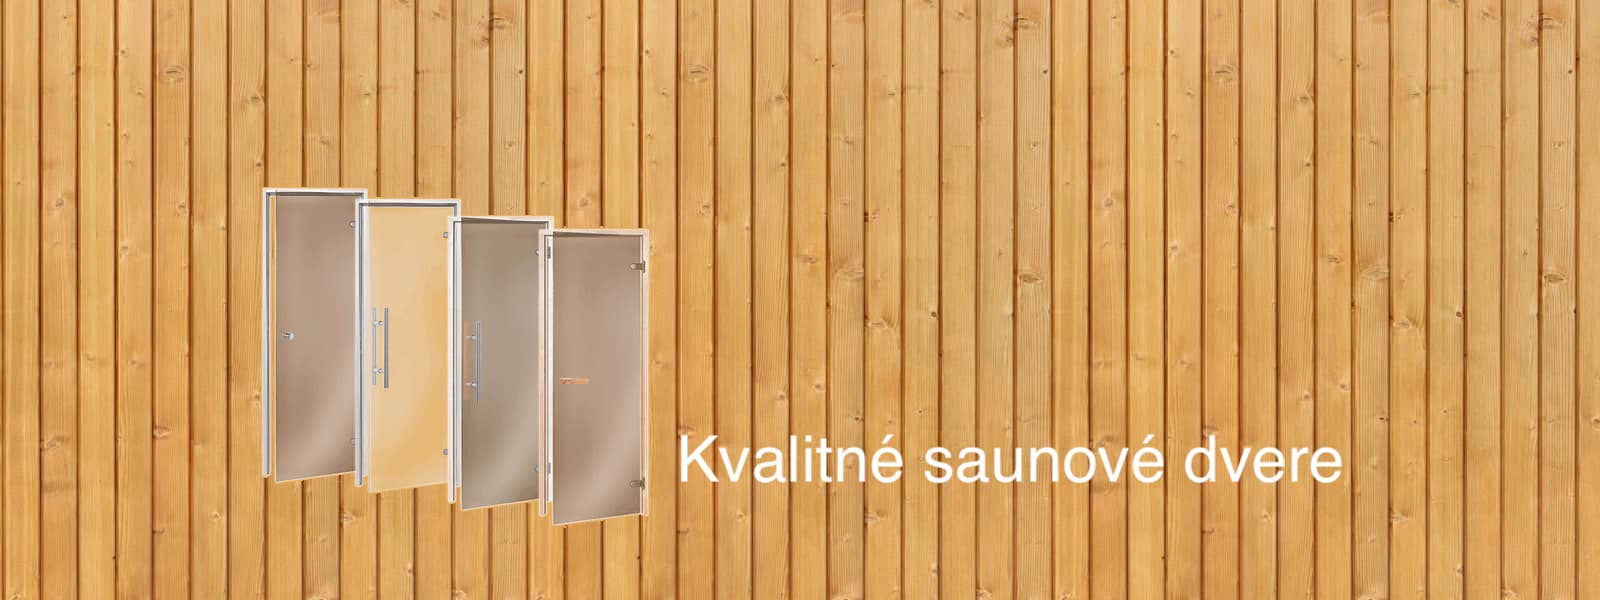 Dvere do sauny.